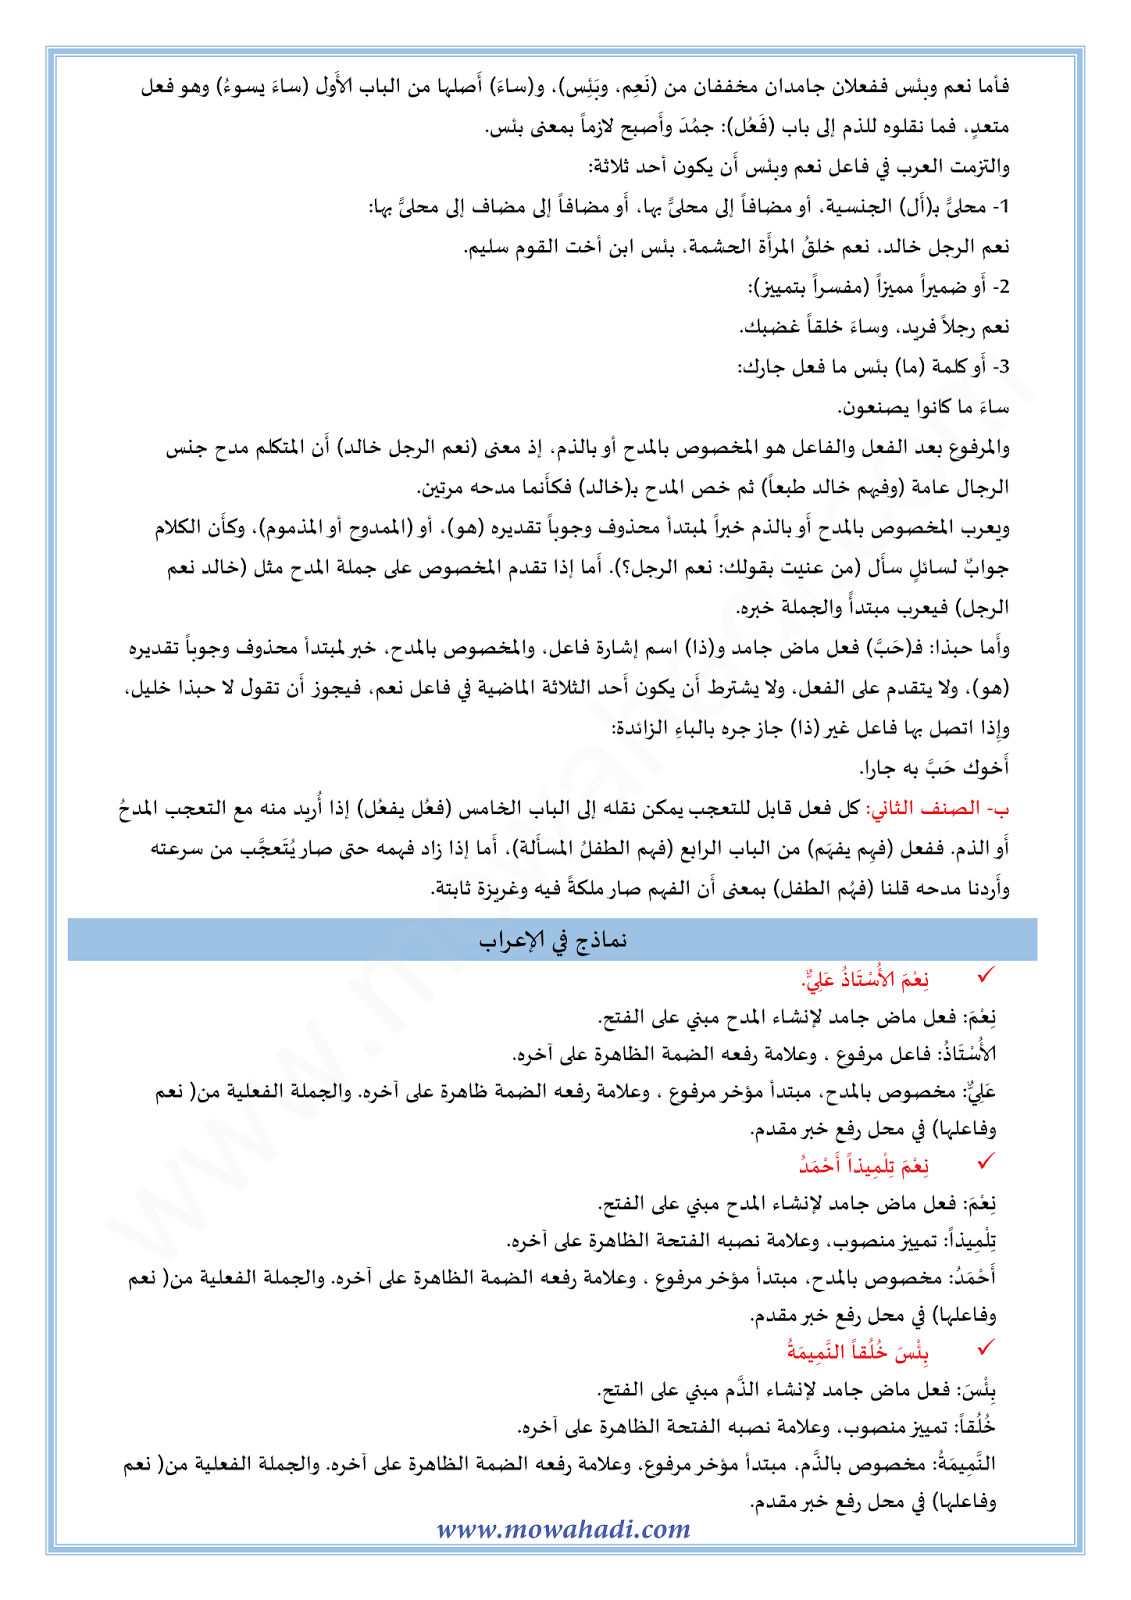 الدرس اللغوي أسلوب المدح و الذم للسنة الثالثة اعدادي في مادة اللغة العربية 10-cours-dars-loghawi3_002